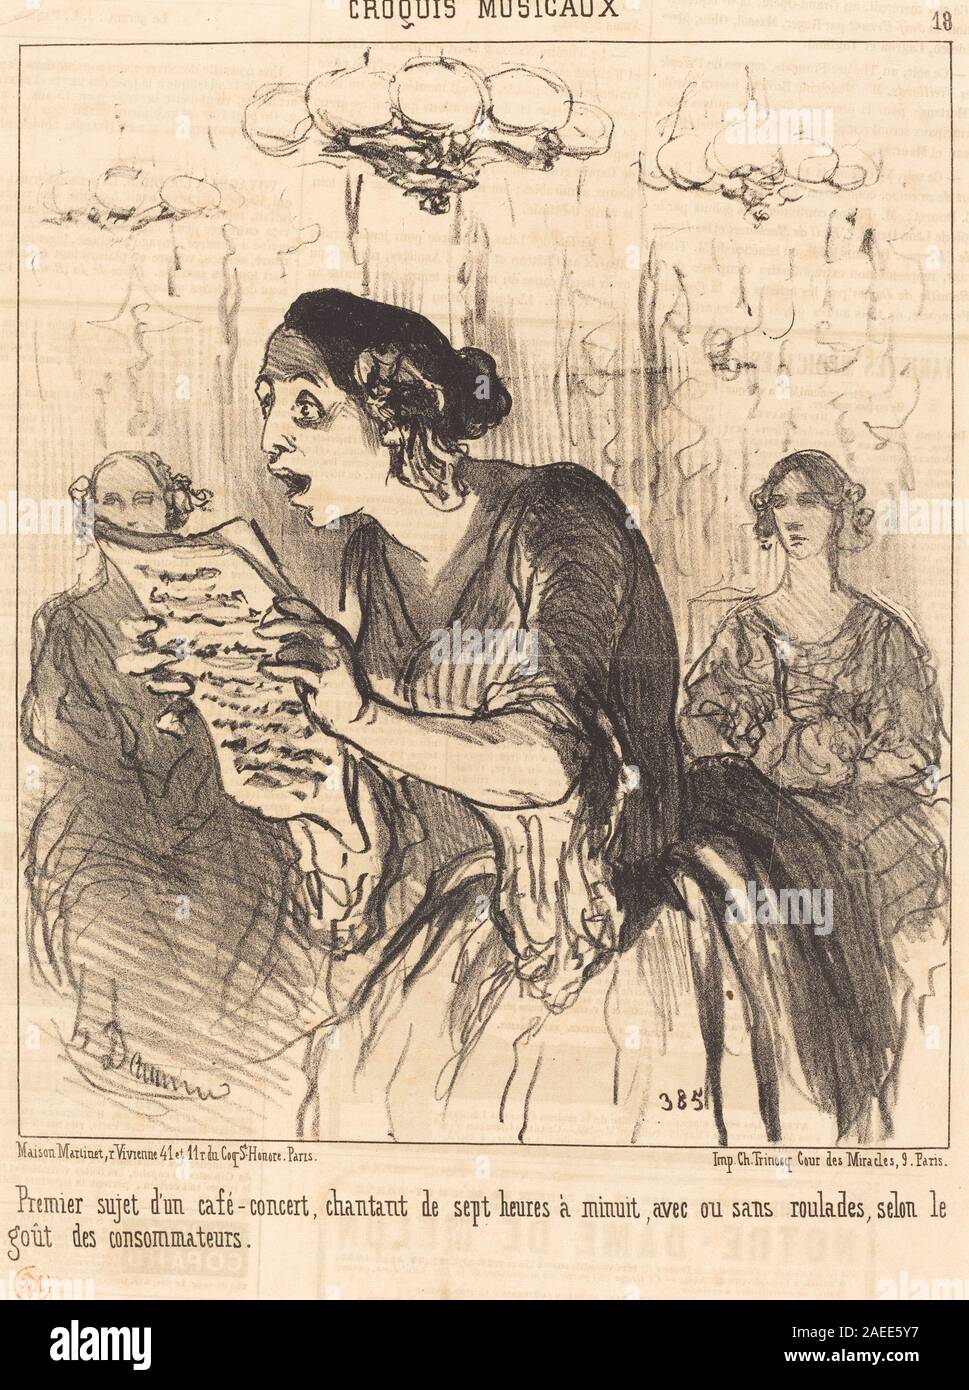 Honoré Daumier, Premier sujet d'un café-concert chantant, 1852 Premier sujet d'un café-concert chantant...; 1852date Stock Photo